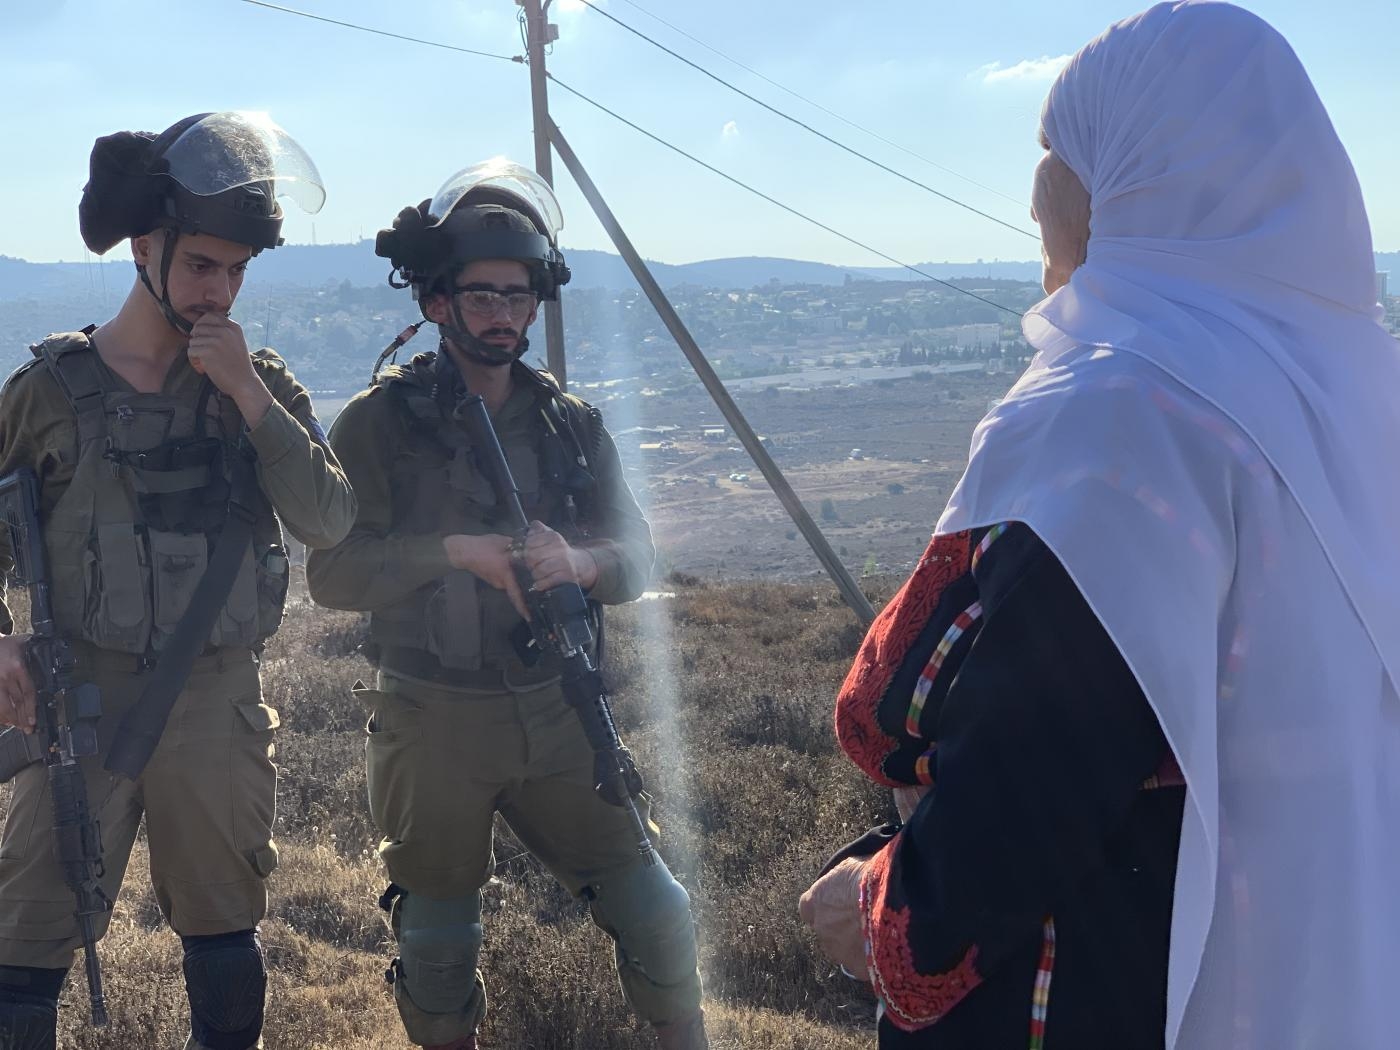 Mariam Hassan Hammad (80 ans) est bloquée par des soldats israéliens qui l’empêchent d’accéder à sa terre dans la région de Thahr al-Mazare, au nord-est de Ramallah en Cisjordanie occupée, le 18 septembre (MEE/Shatha Hammad)